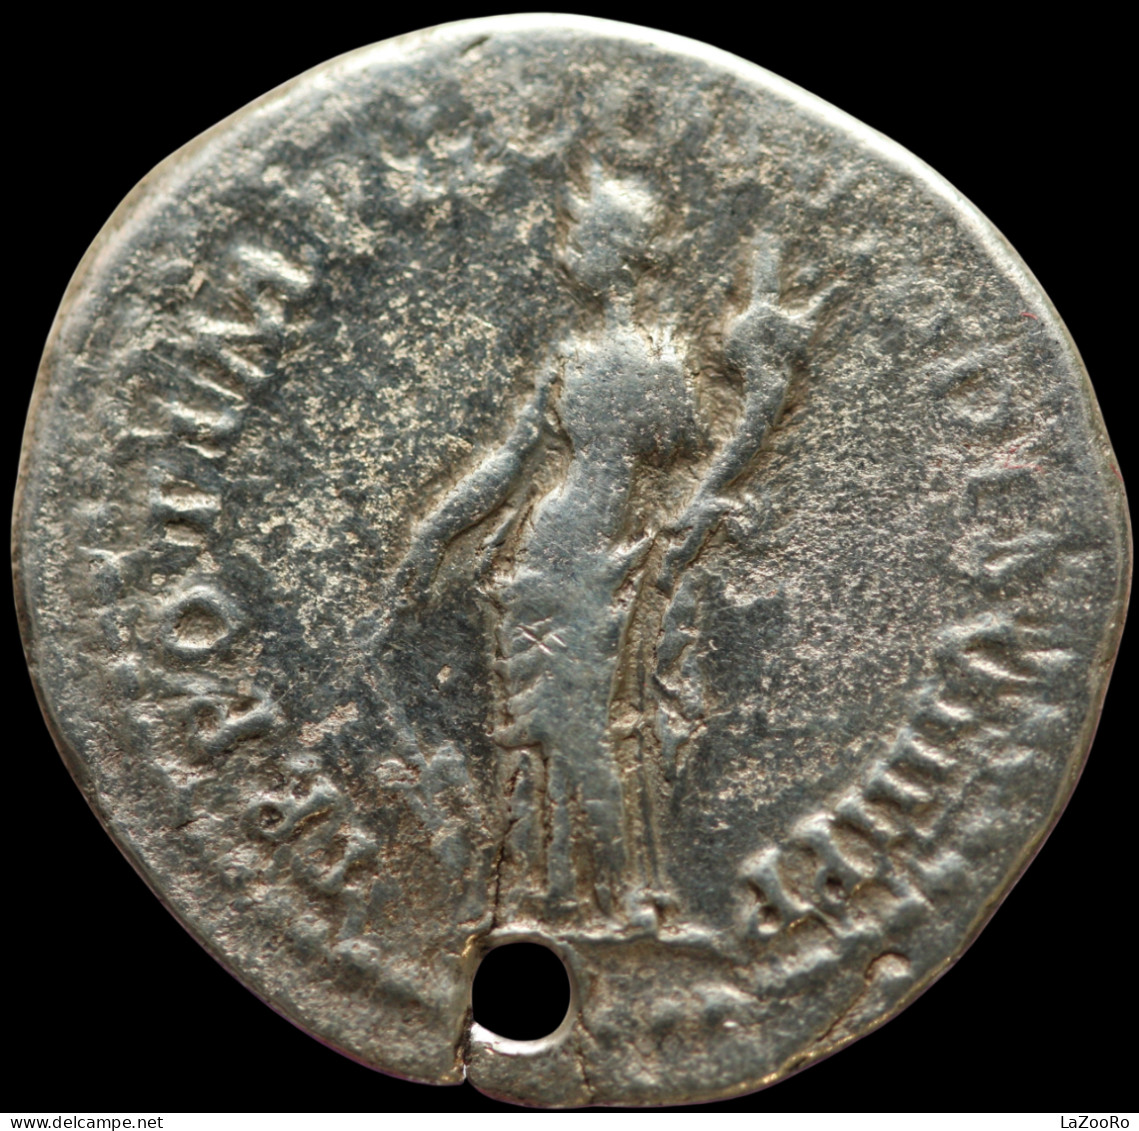 LaZooRo: Roman Empire - AR Denarius Of Domitian As Caesar (81-96 AD), Fortuna, Ex Antique Jewellery - The Flavians (69 AD To 96 AD)